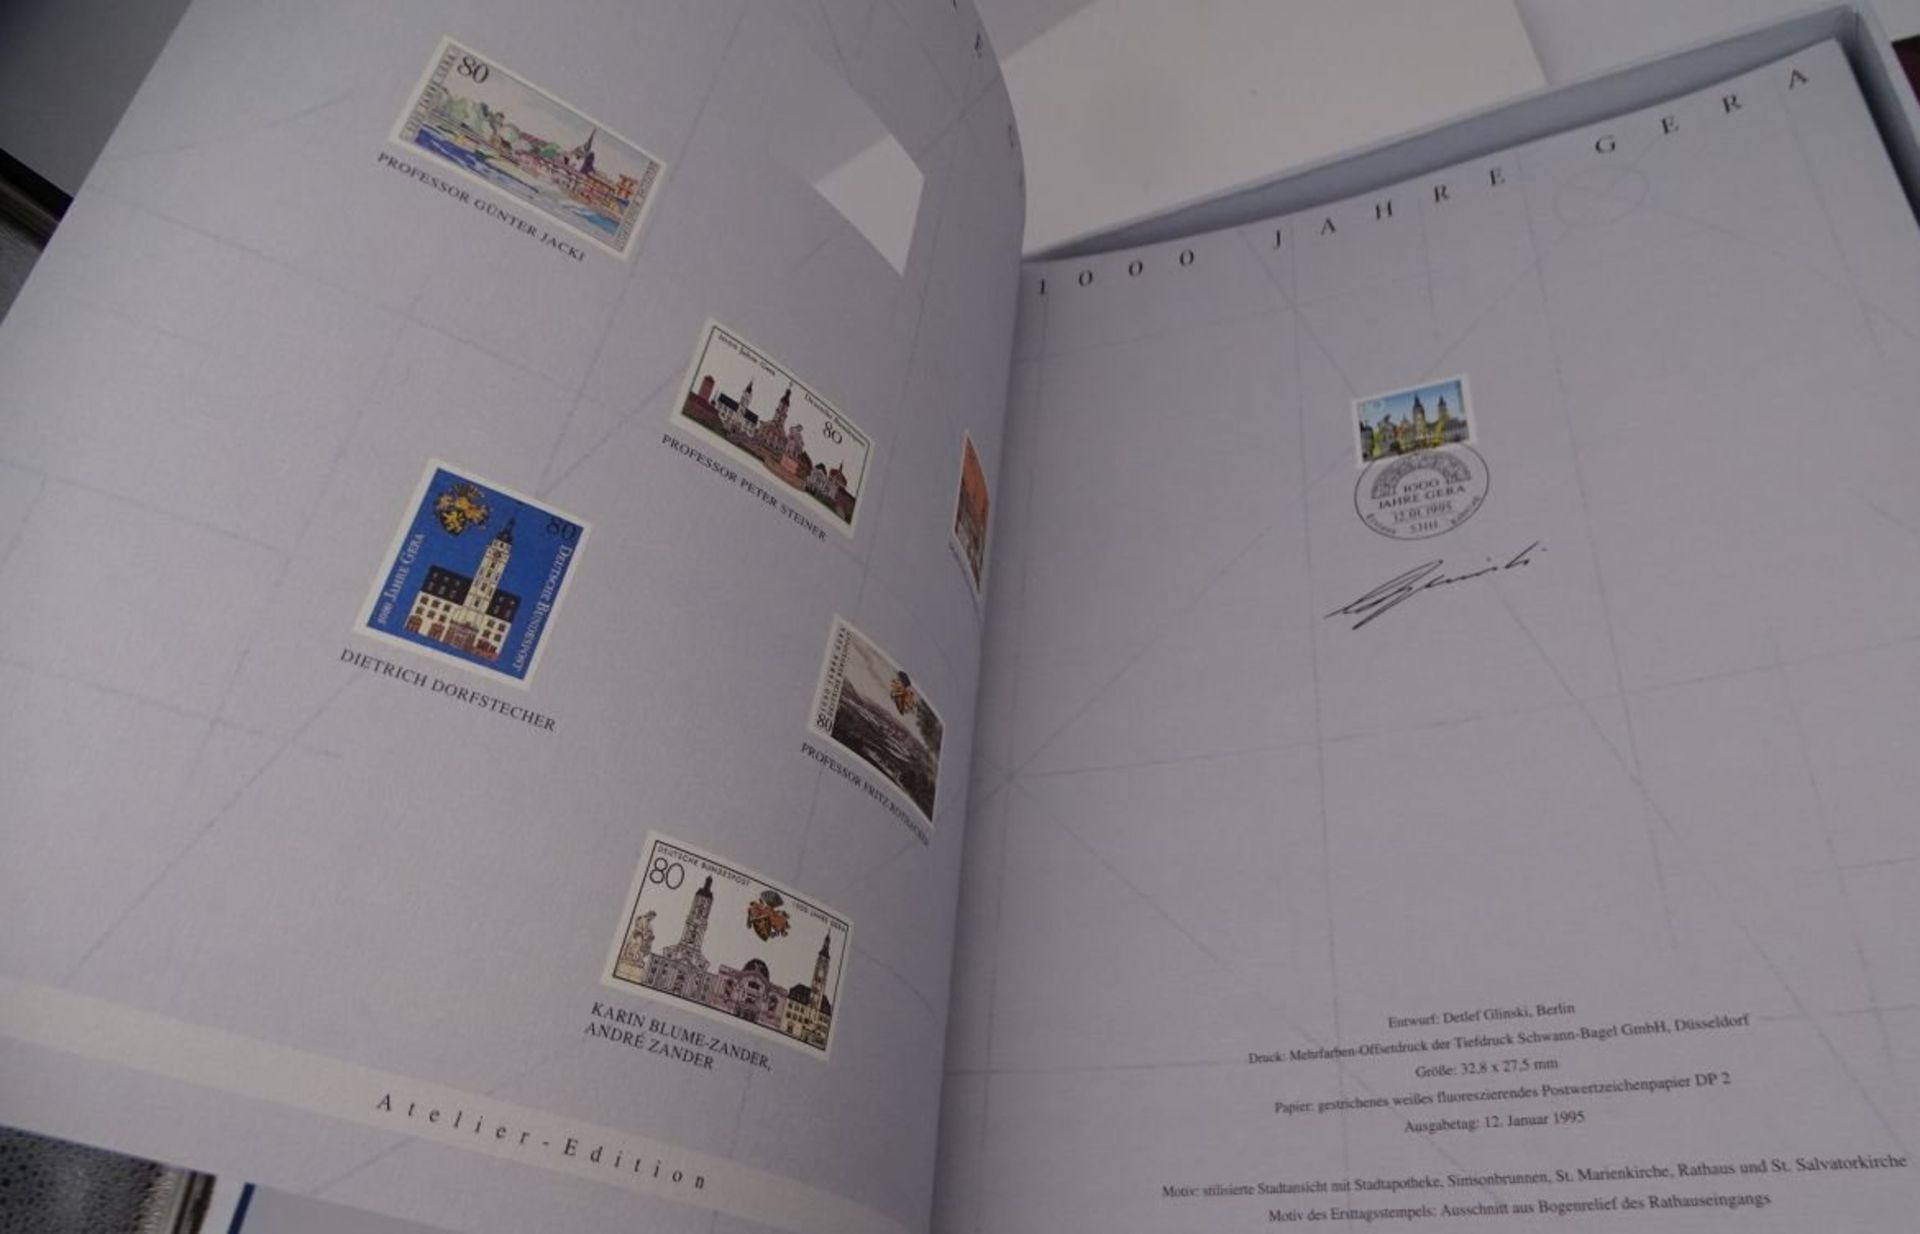 2 Grossbände Briefmarken Bund Atelier-Edition, 1995 und 1994,komplett. limitierte Auflagen - Bild 6 aus 11